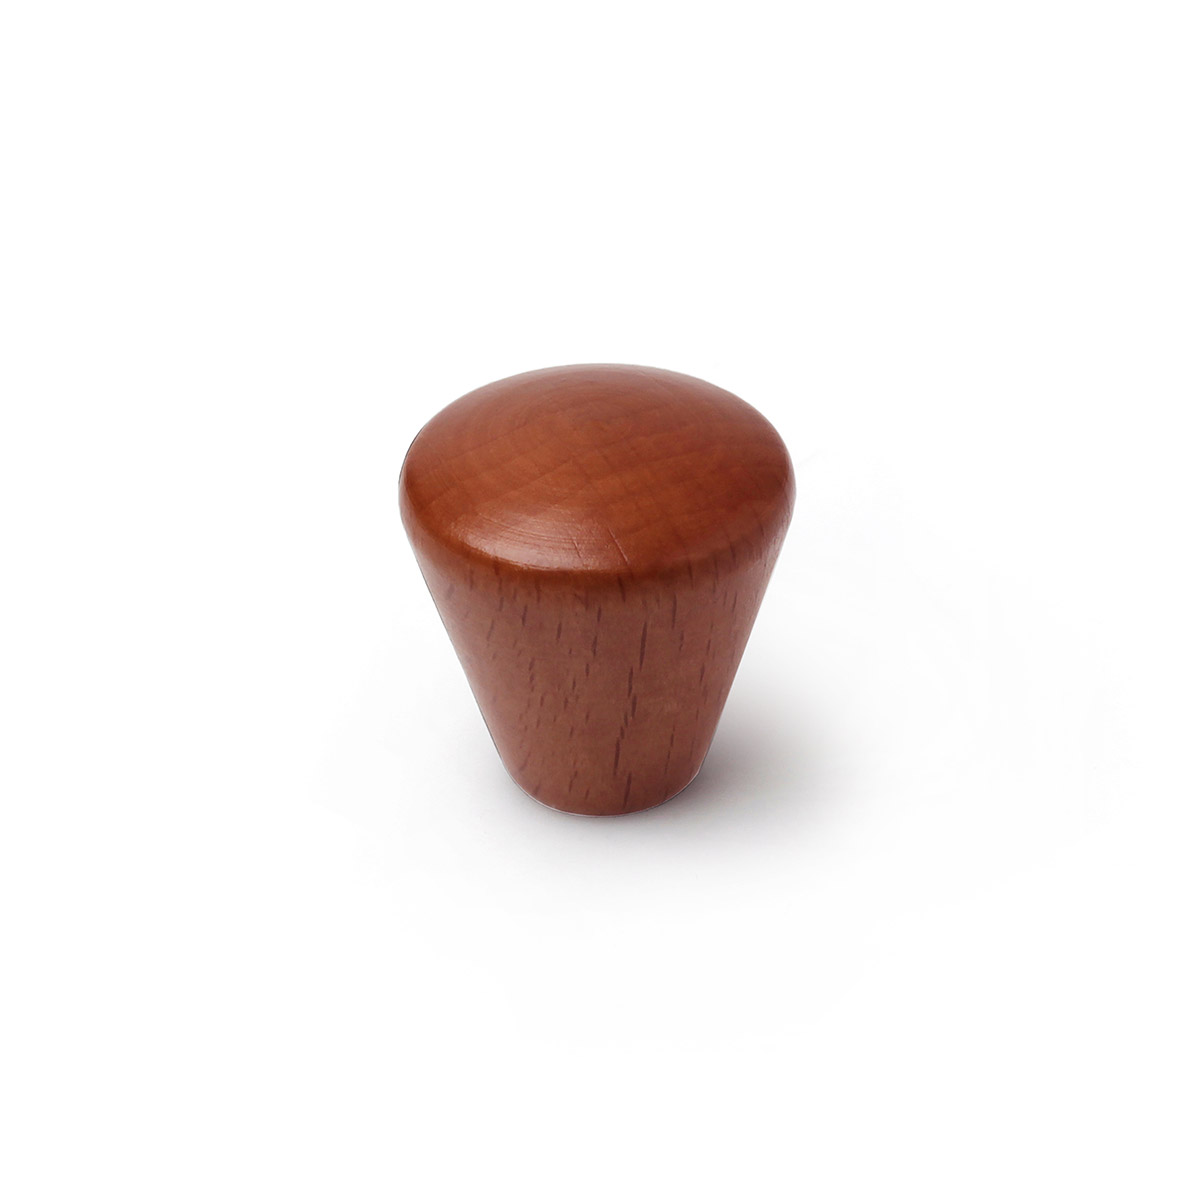 Pomo en madera con acabado cerezo, dimensiones: 25x25x26 mm, Ø: 25mm